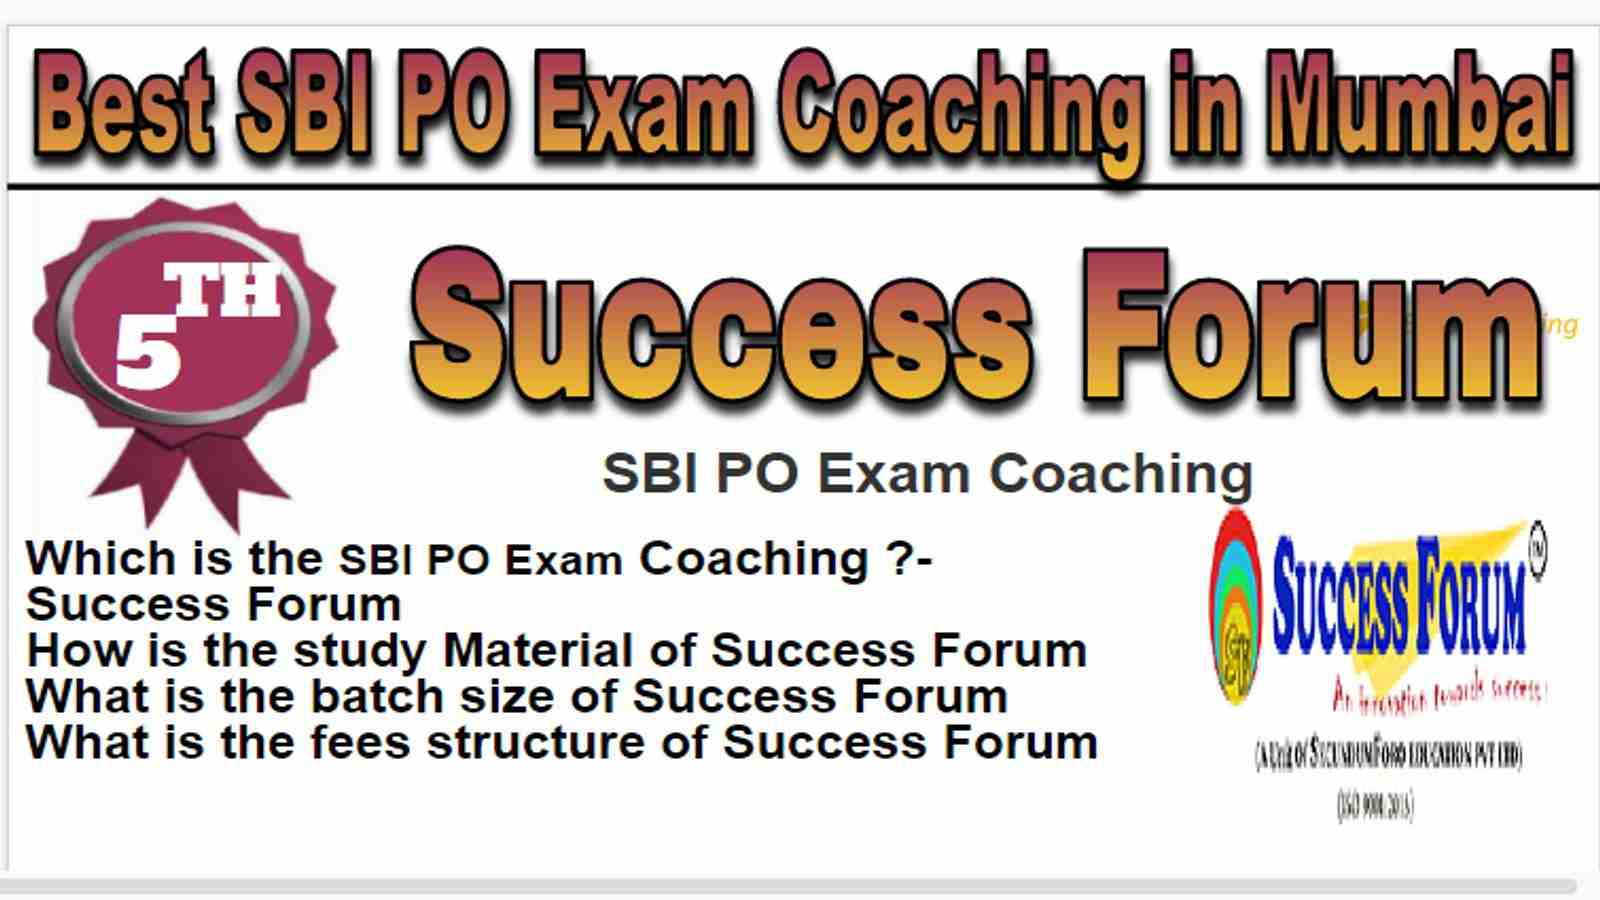 Rank 5 Best SBI PO Exam Coaching in Mumbai